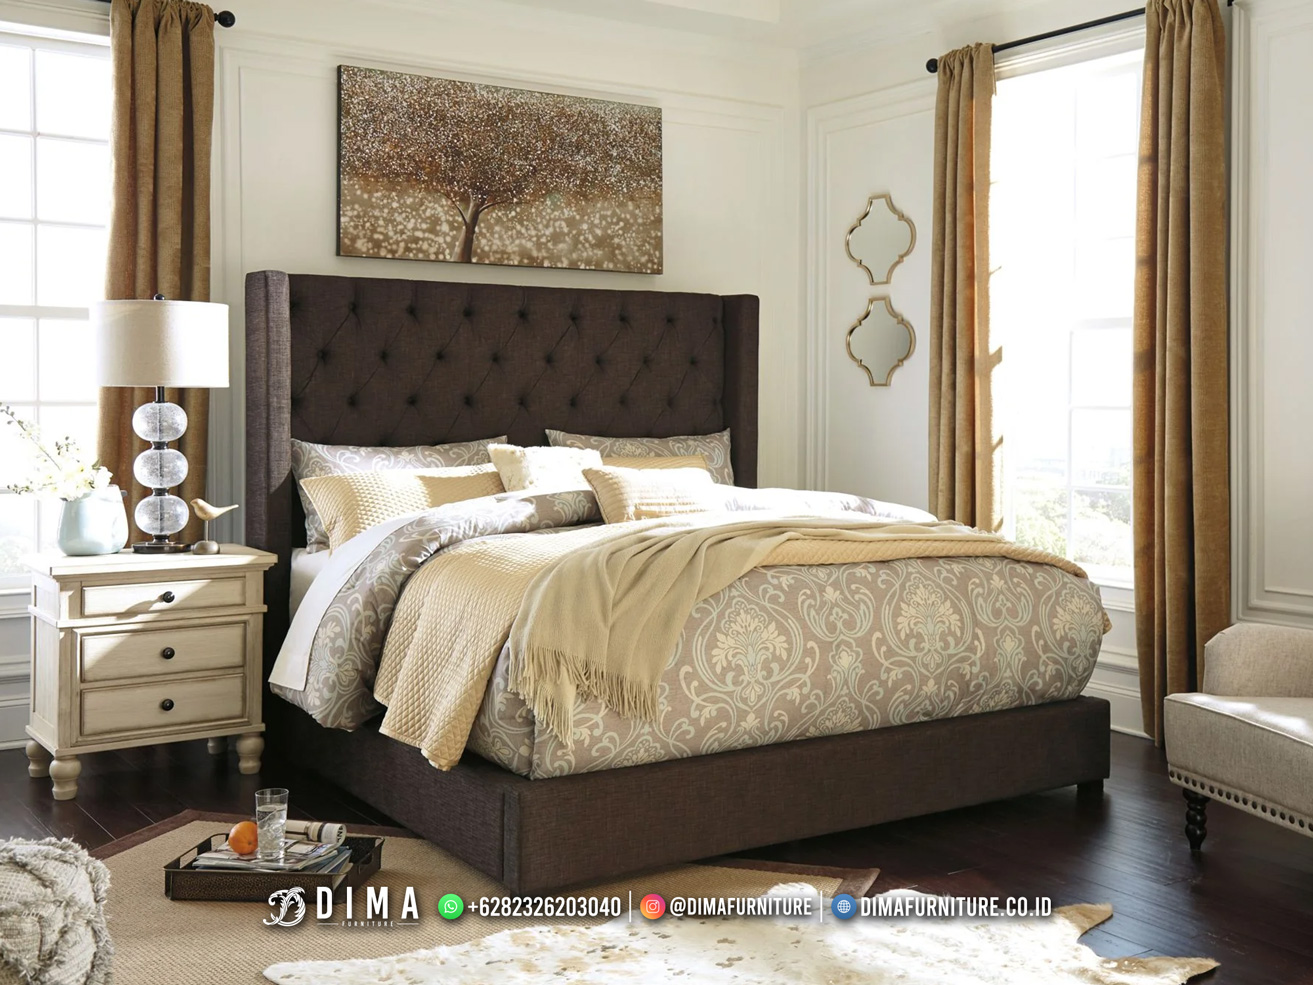 Desain Dipan Tempat Tidur Modern Minimalis Full Jok Ekspor Quality DF-2908